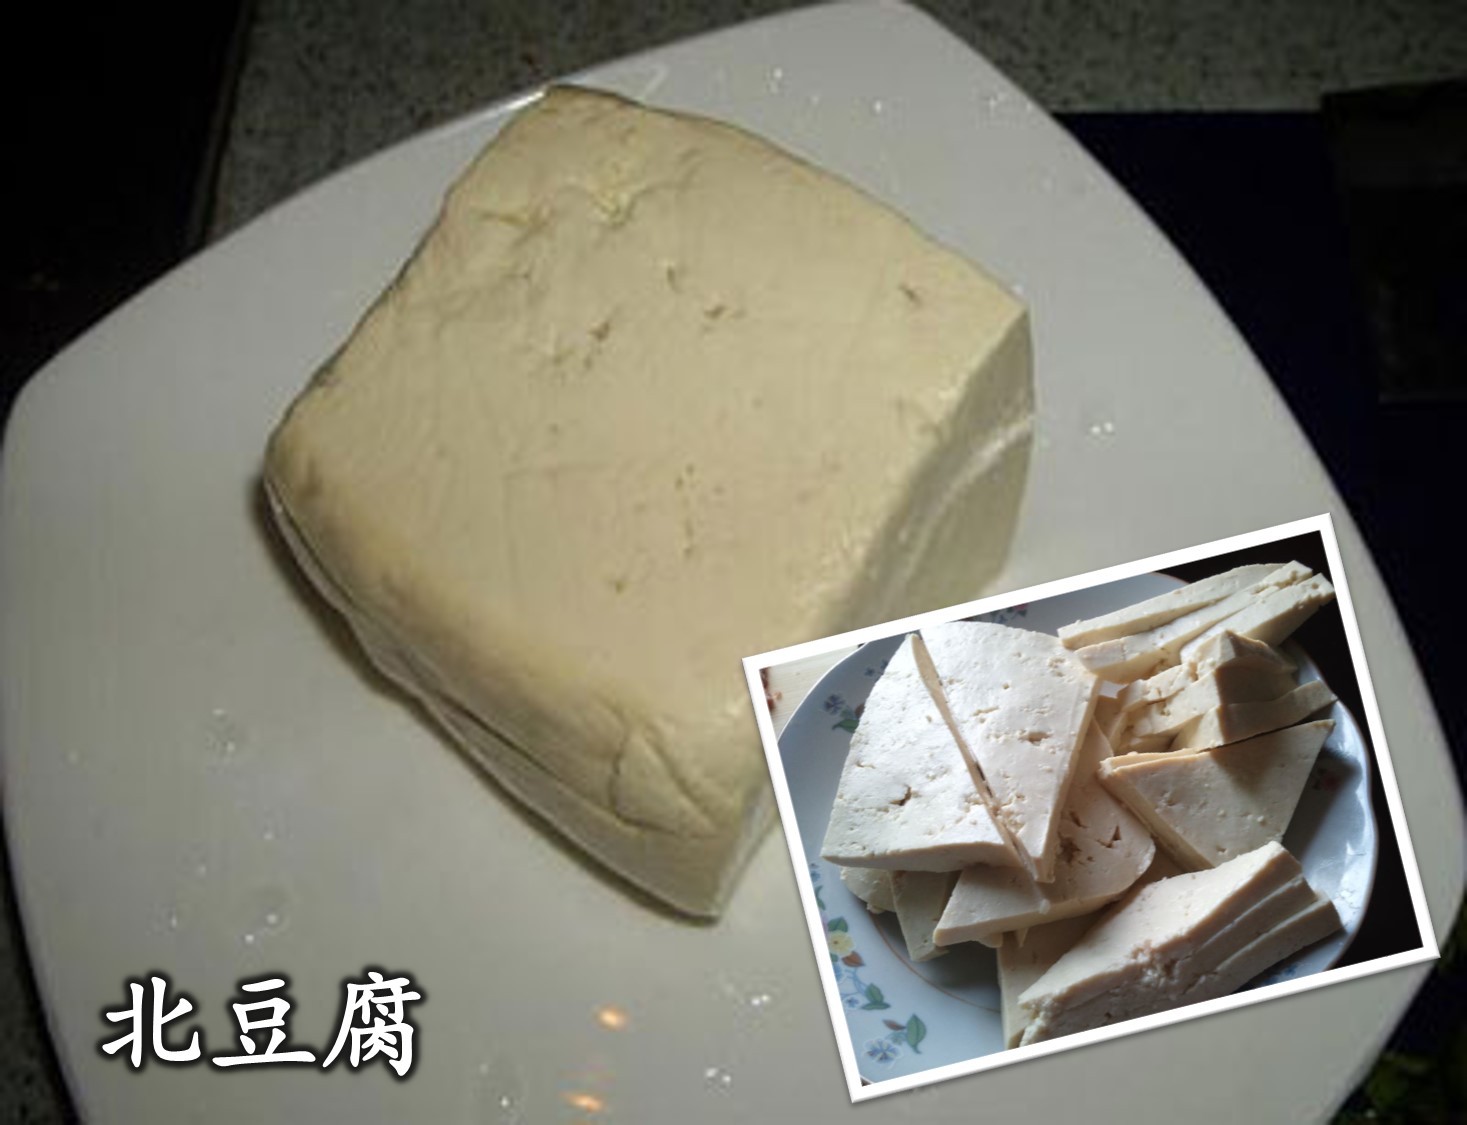 豆腐的种类及各种做法！ - Leesharing